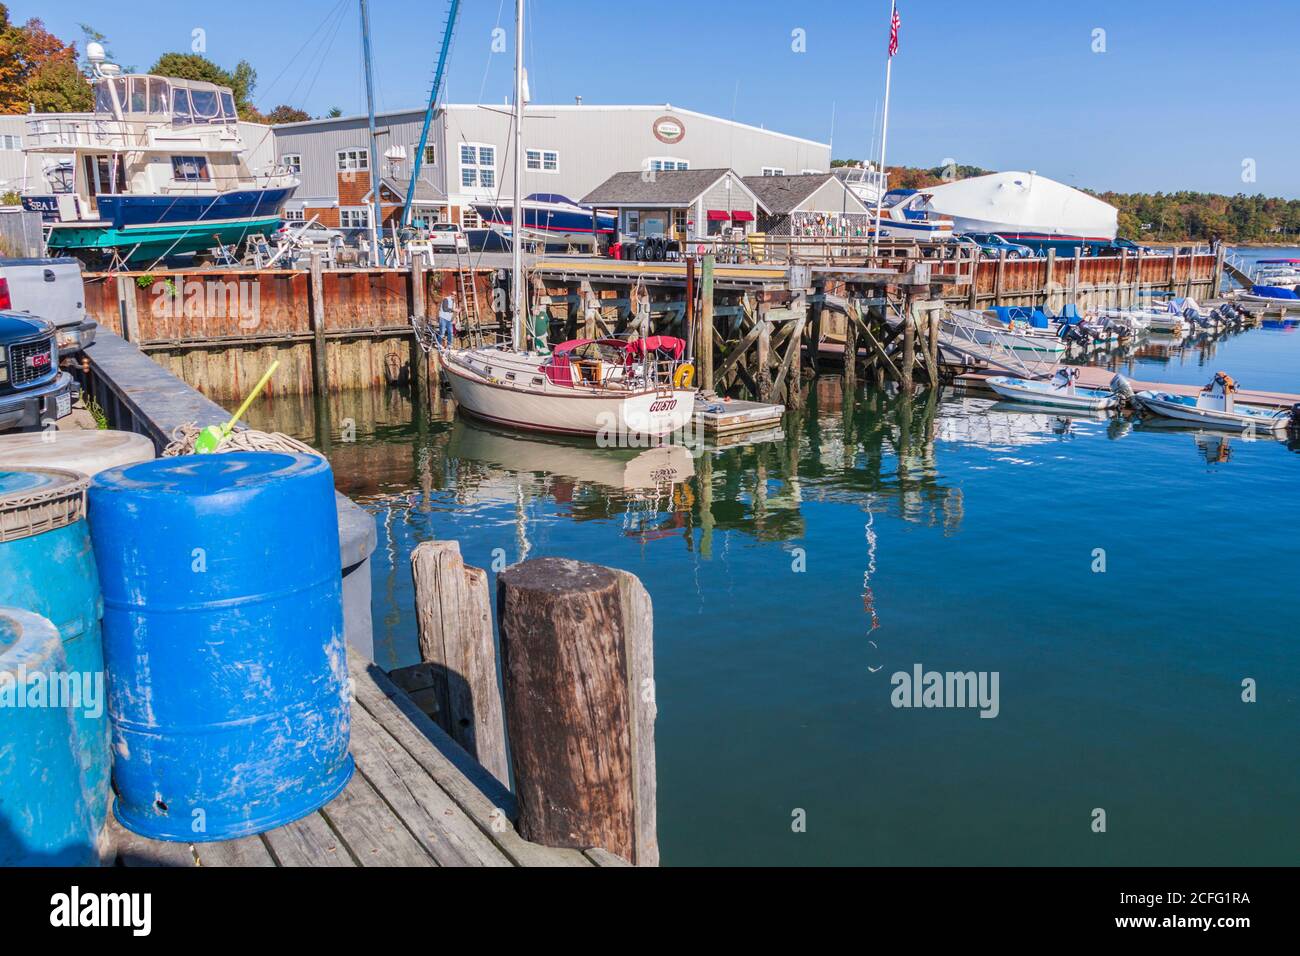 Zona di Freeport Town Wharf presso il porto di South Freeport, South Freeport, Maine. Le barche da pesca e gli attrezzi da pesca abbondano in questo banchina del Maine quintessential. Foto Stock